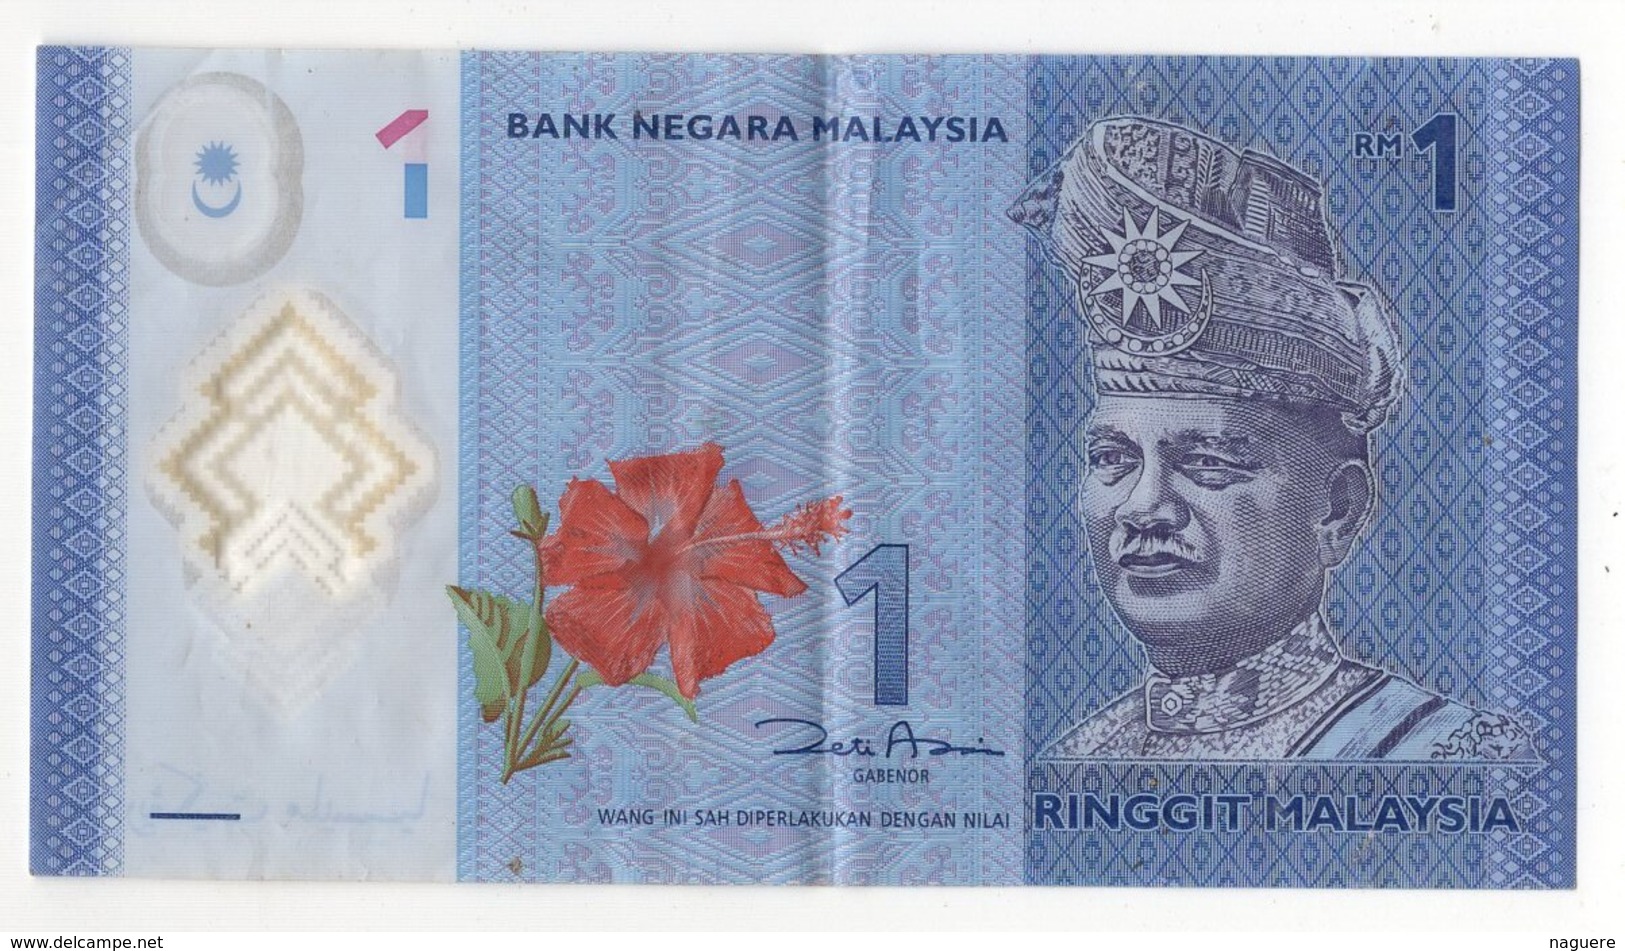 BANK NEGARA MALAYSIA 1 - Malaysia